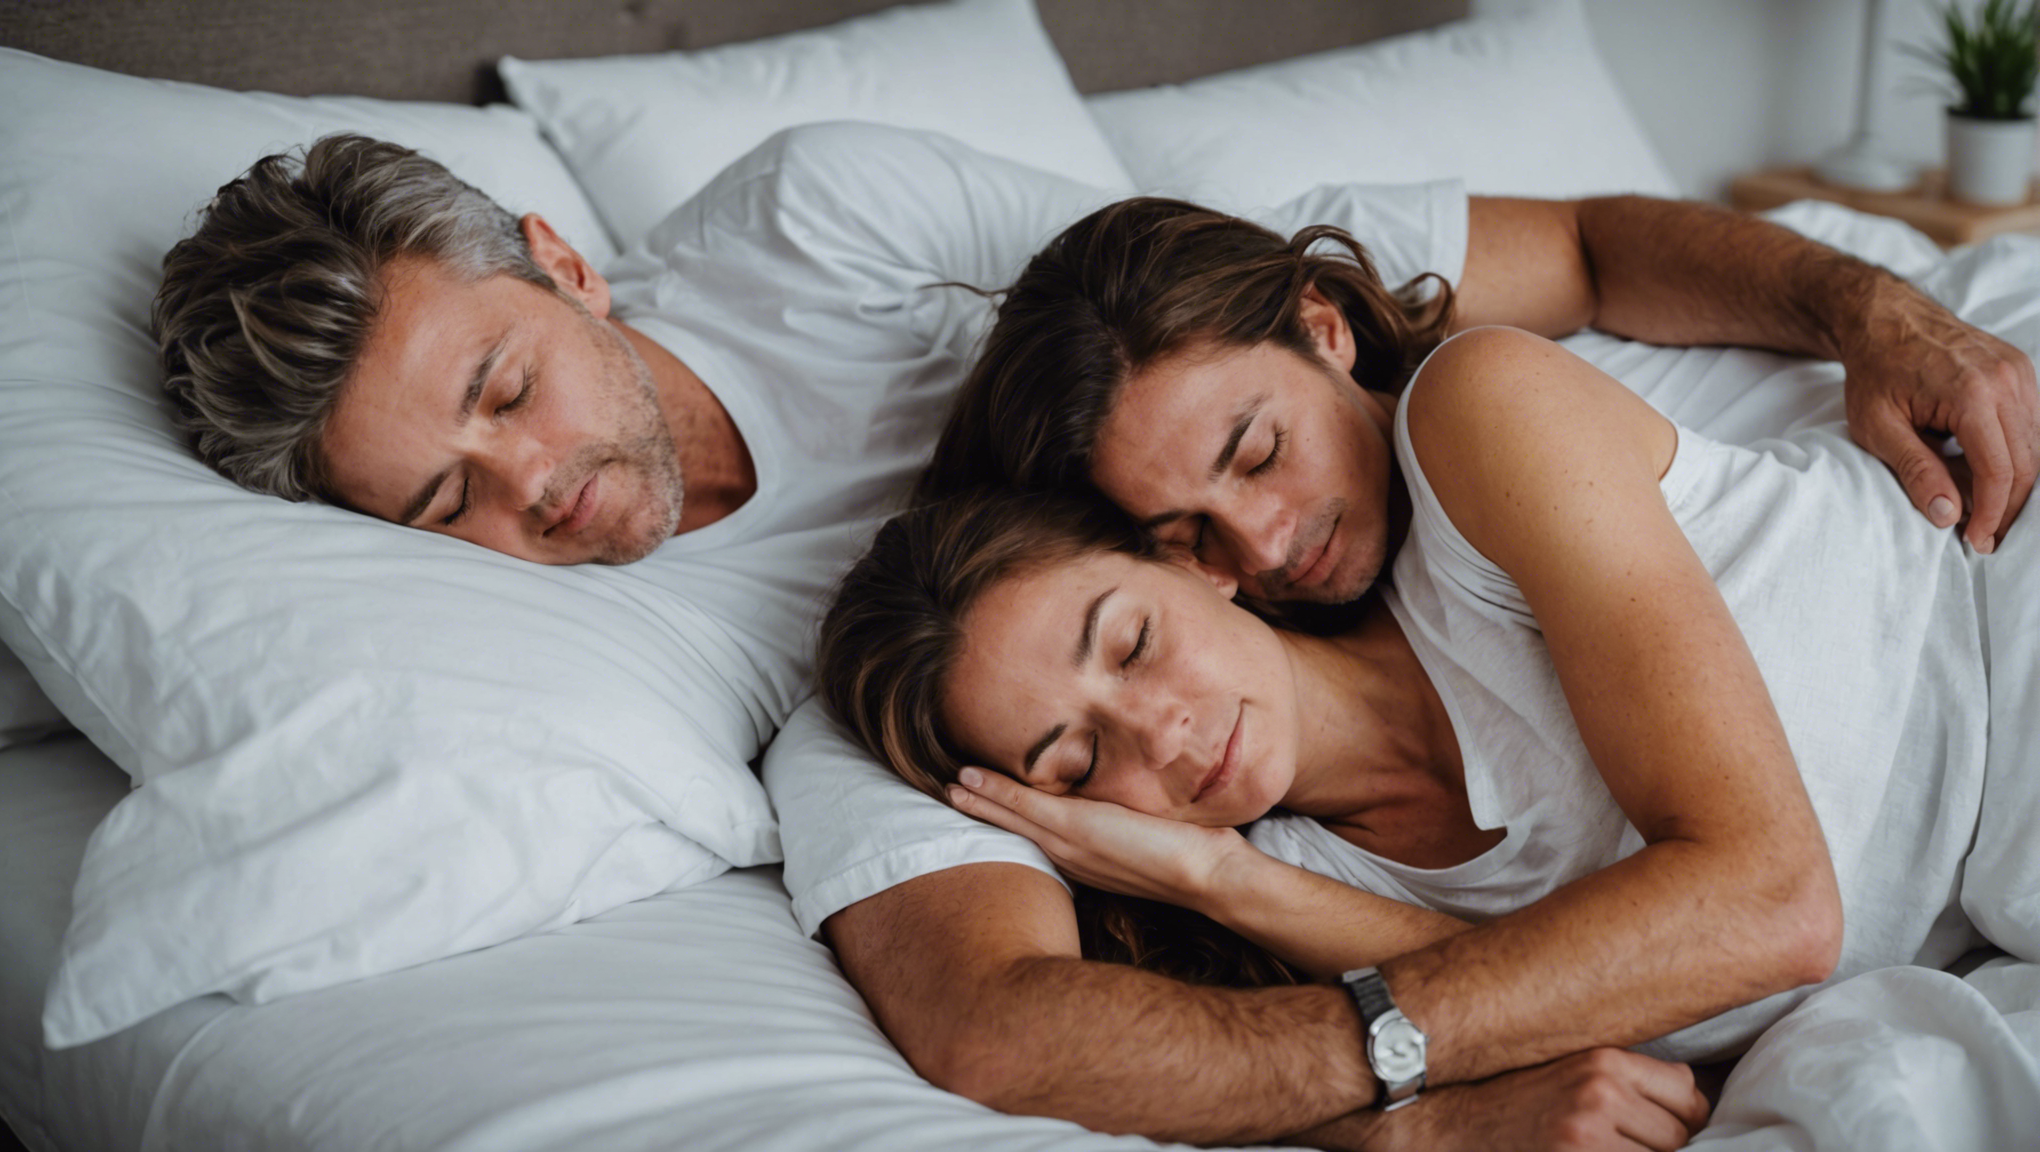 découvrez la meilleure position pour dormir en couple pour des nuits paisibles et reposantes. apprenez comment améliorer la qualité de votre sommeil à deux.